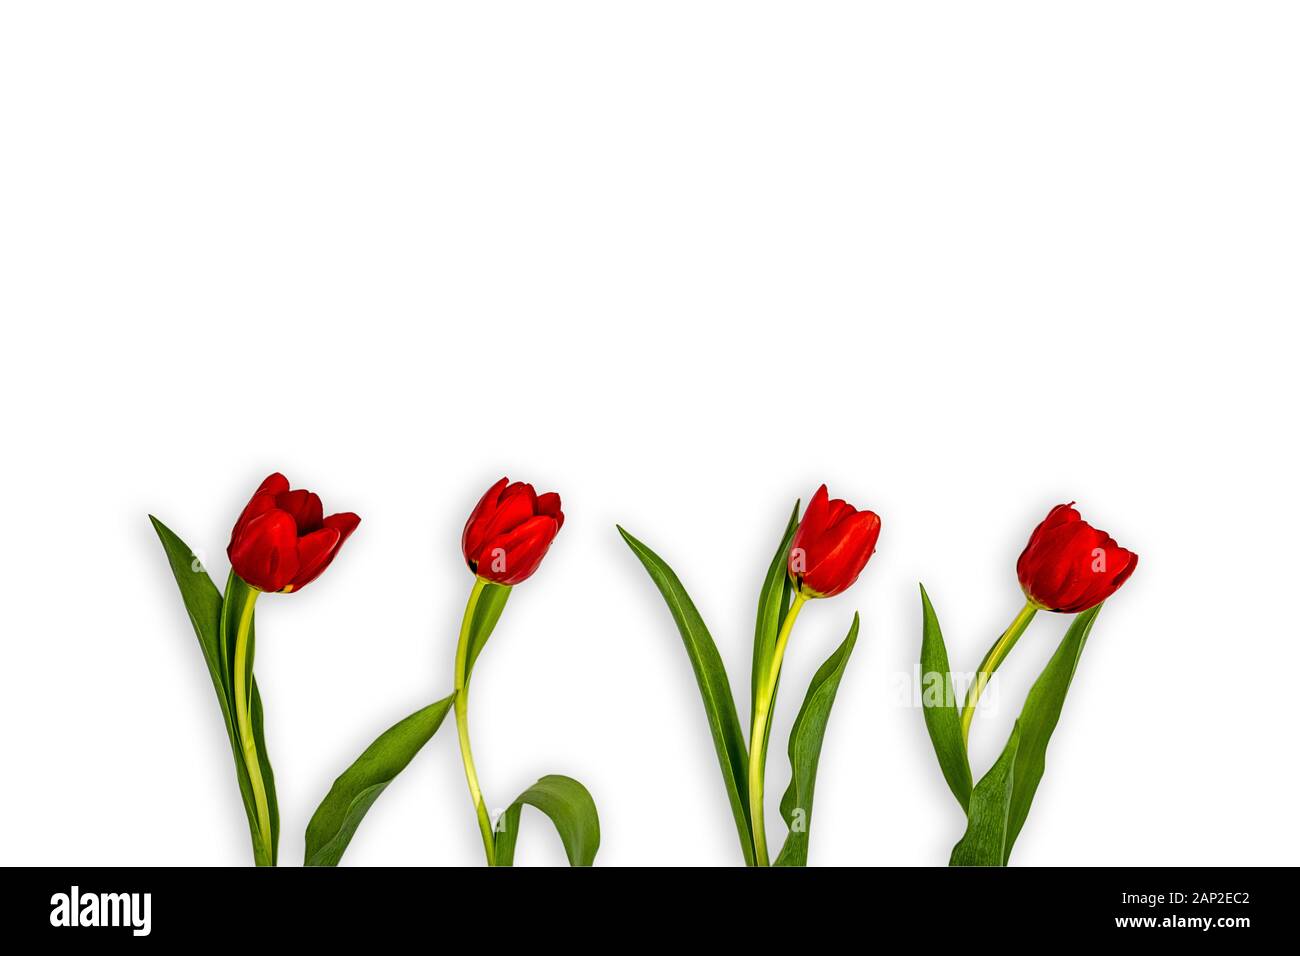 Blumen von roten Tulpen im unteren Teil von einem weißen Hintergrund alle nach rechts gedreht Stockfoto